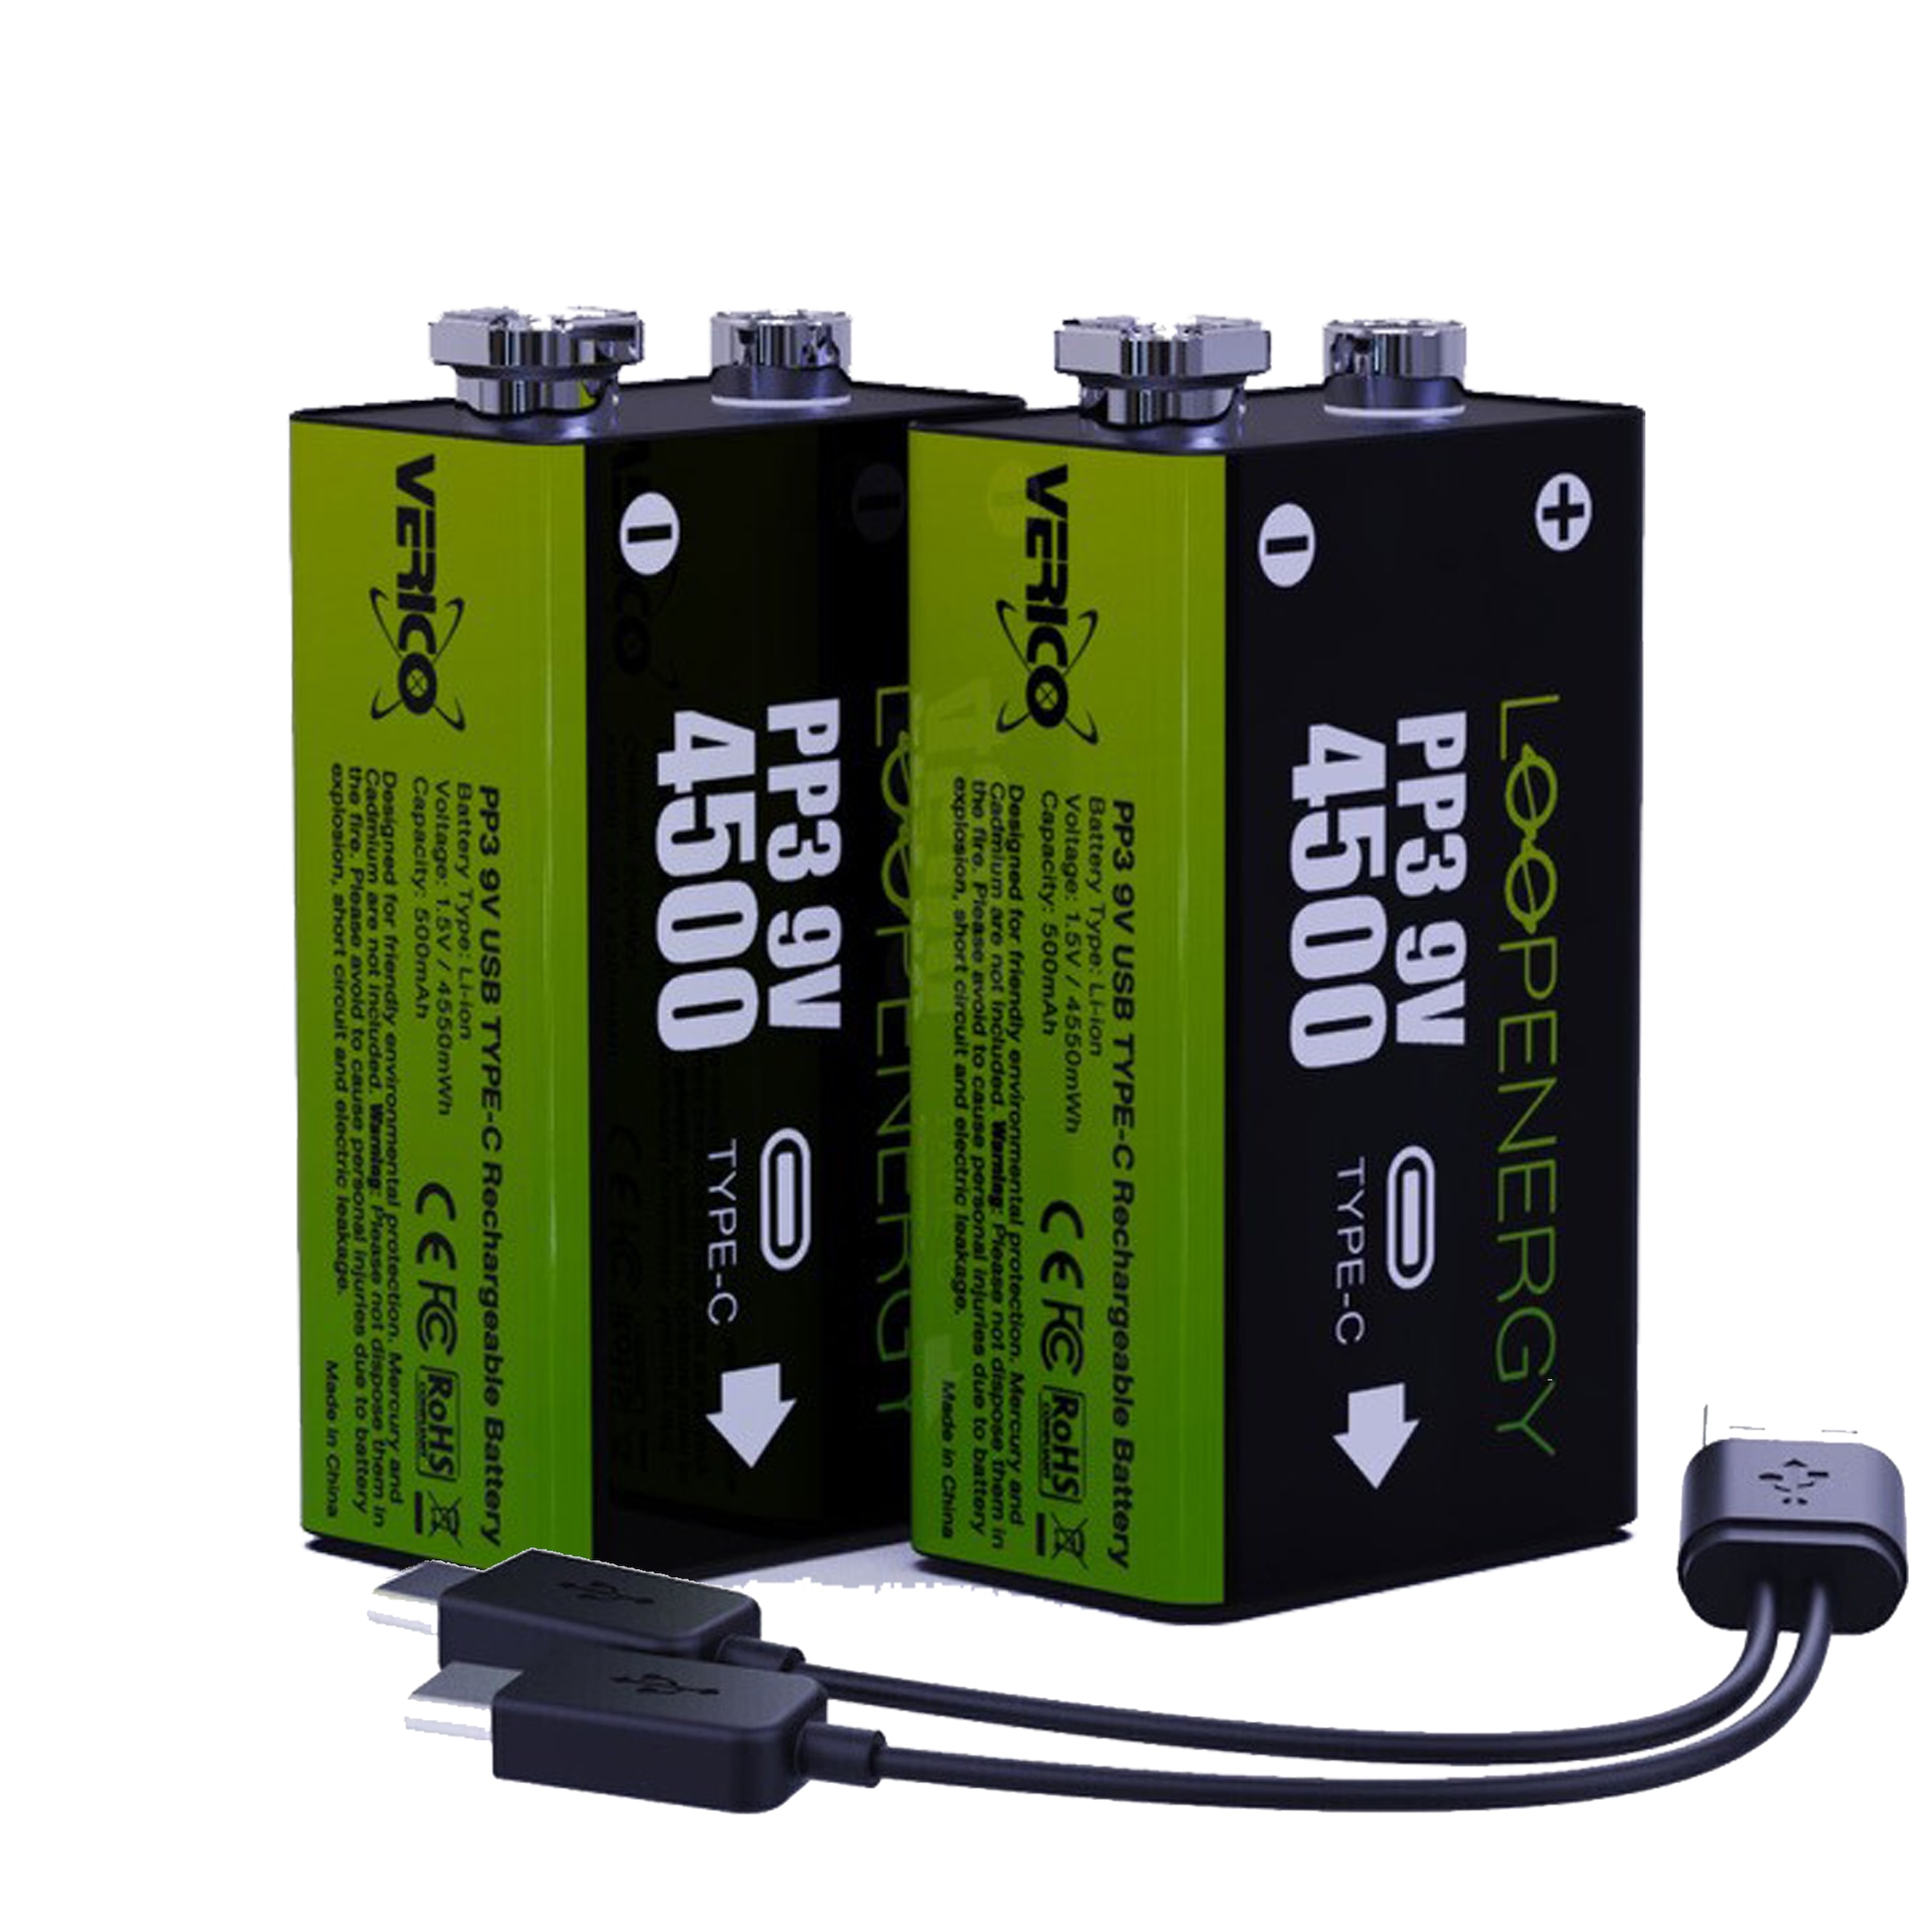 Batterie »Loopenergy 9V (Block)«, 1,5 V, (2 St.), USB-C Kabel im Lieferumfang